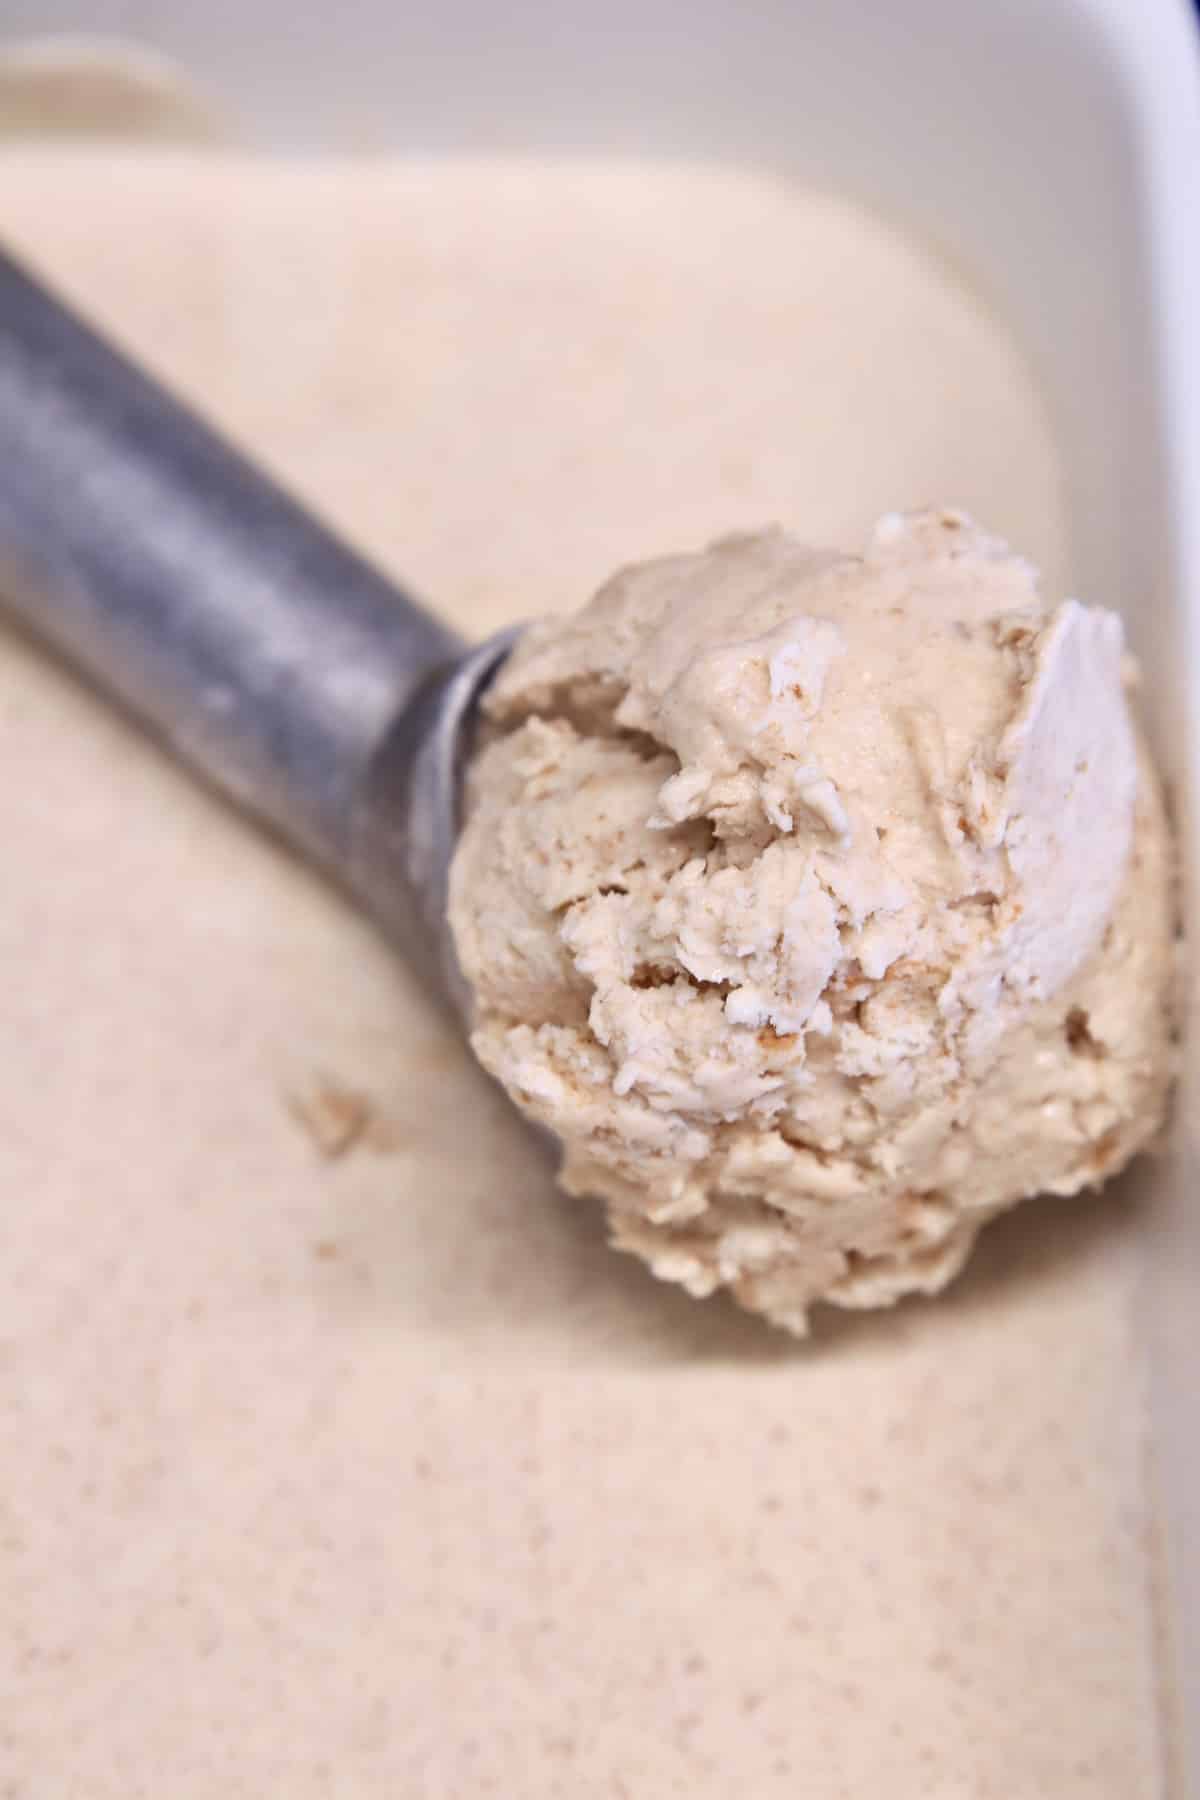 Ice cream scoop with cinnamon ice cream.